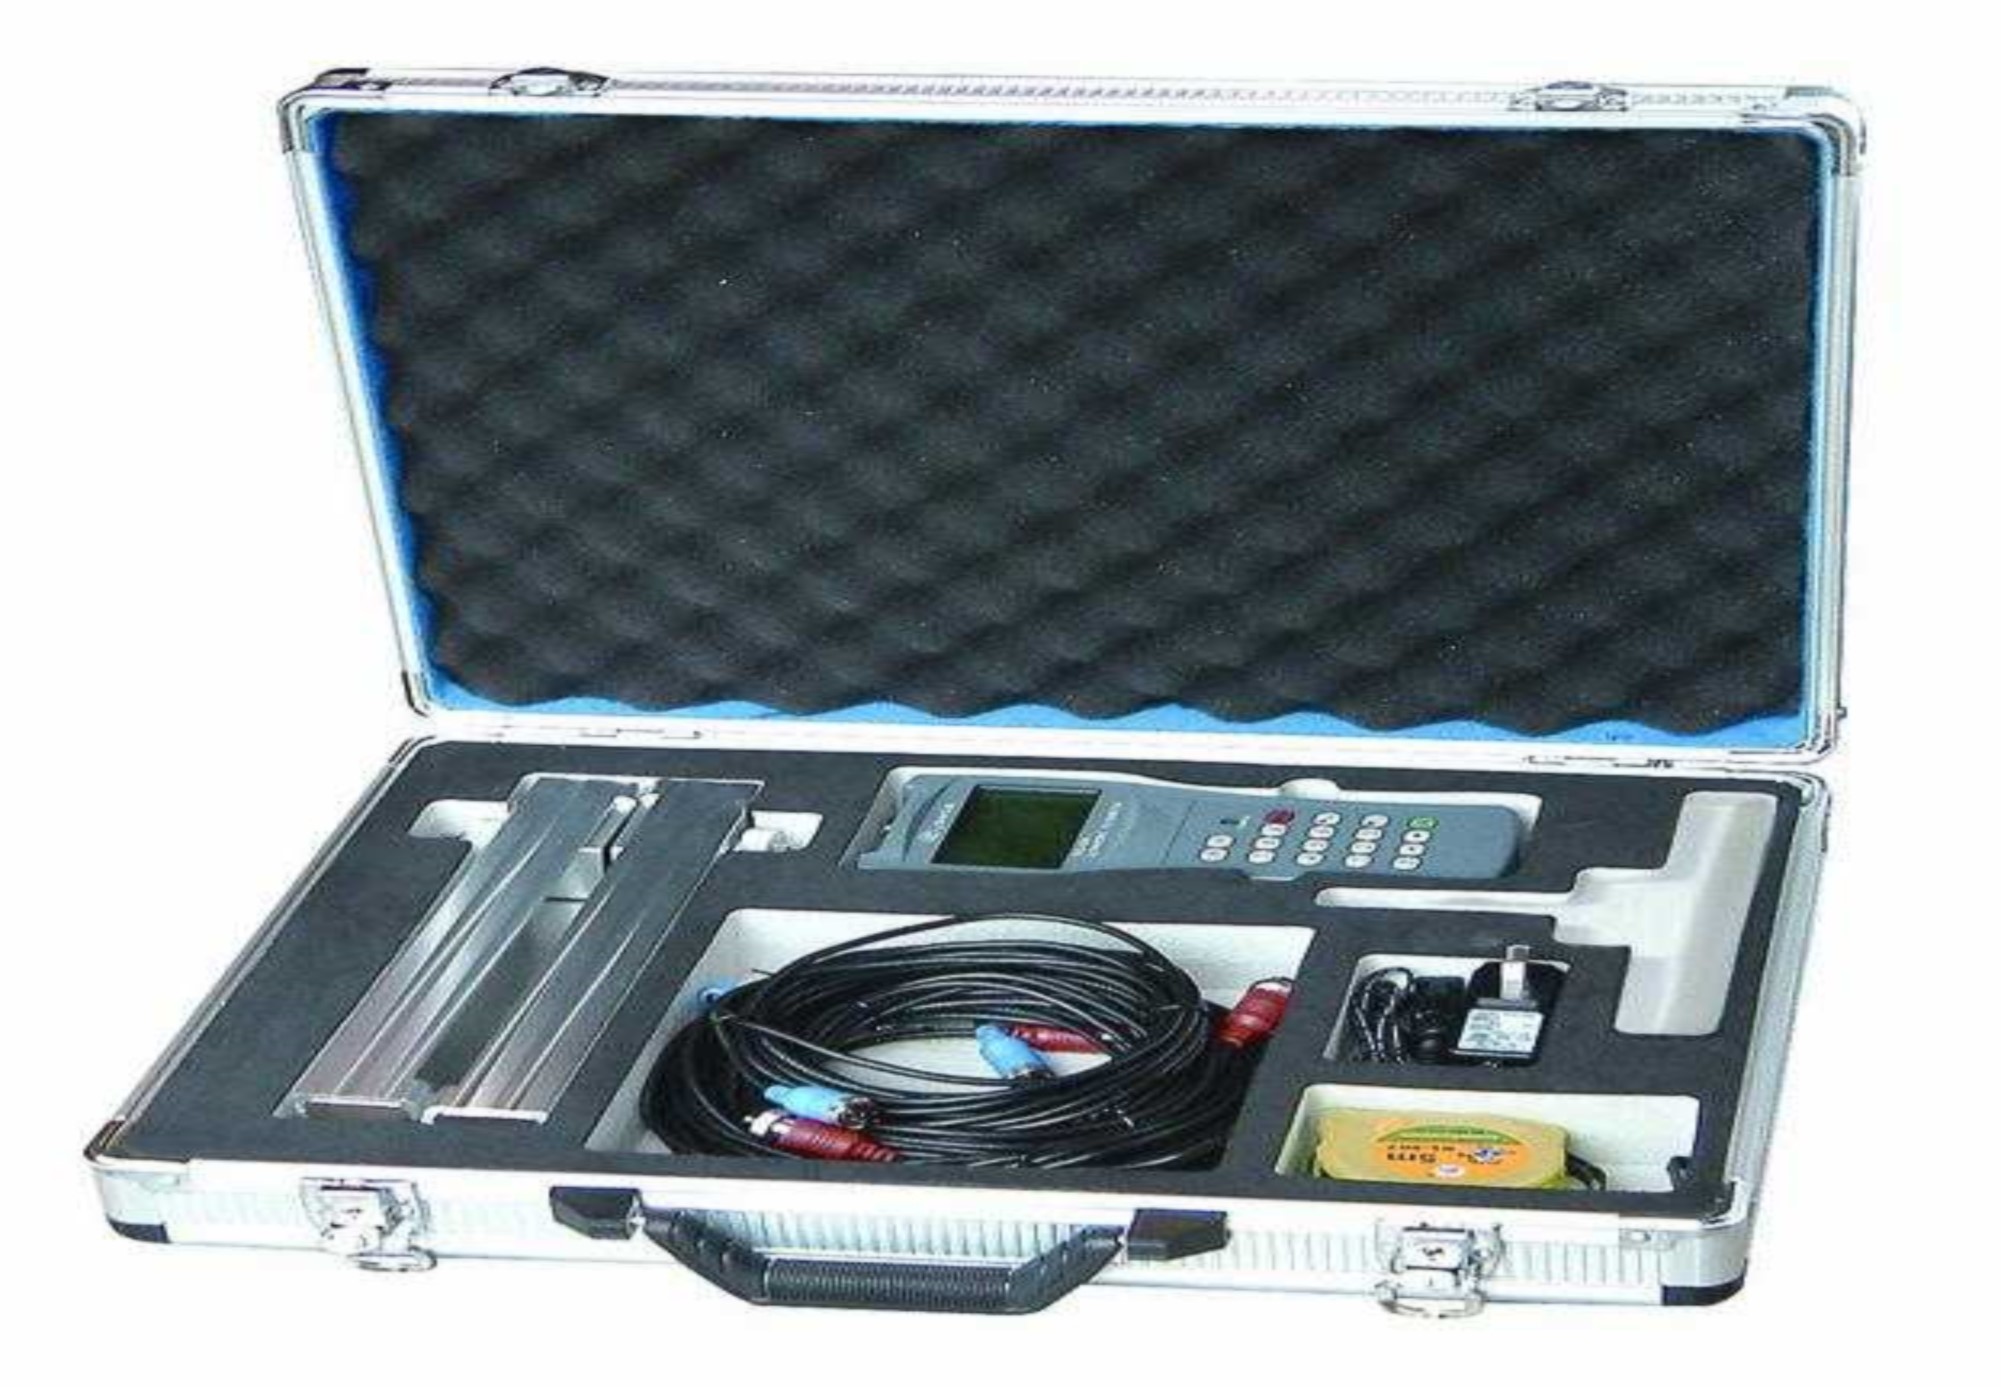 TDS-100H Ultrasonic Flowmeter